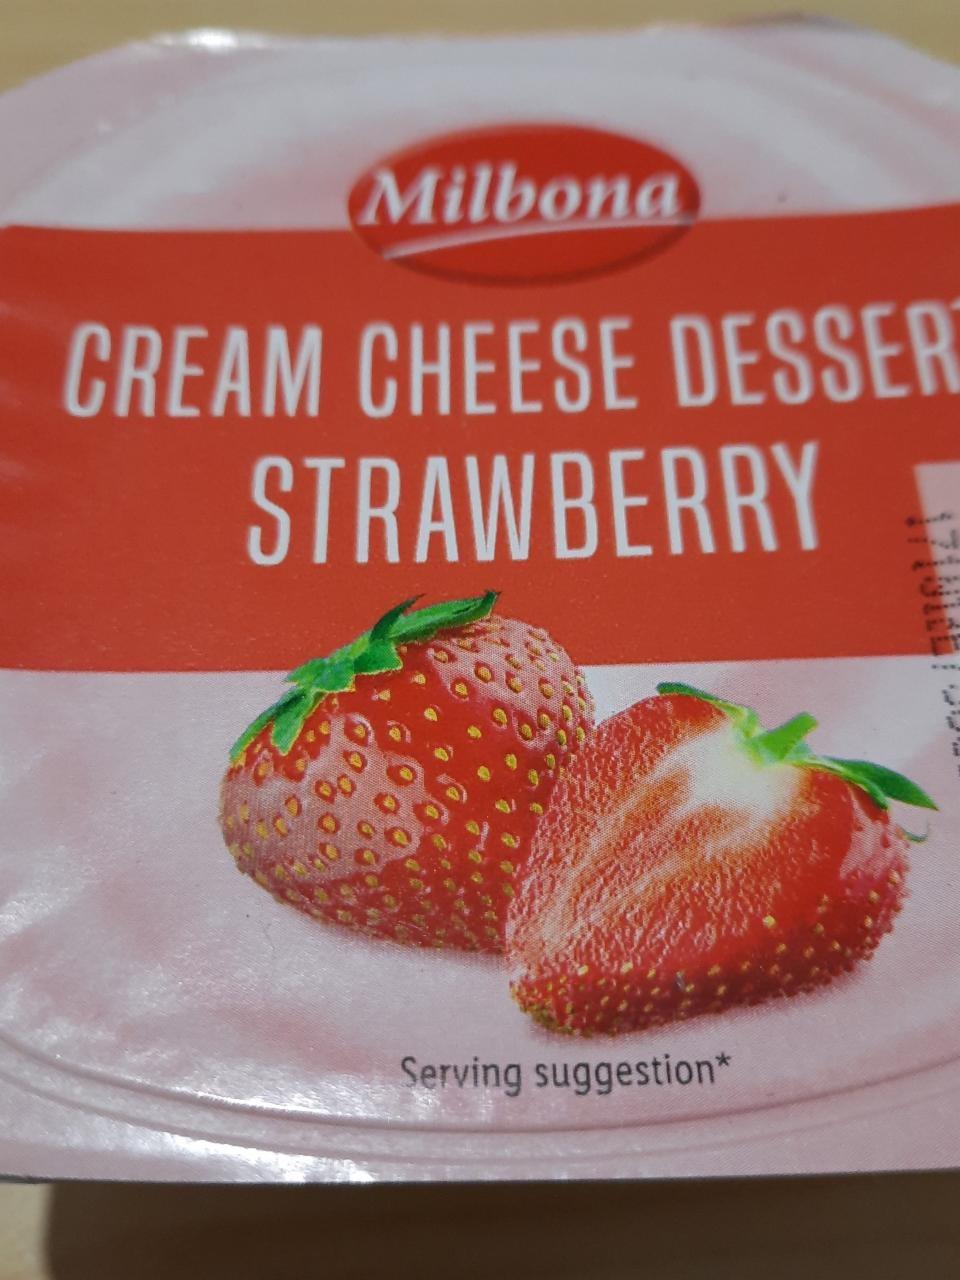 Képek - Cream cheese desszert strawberry Milbona